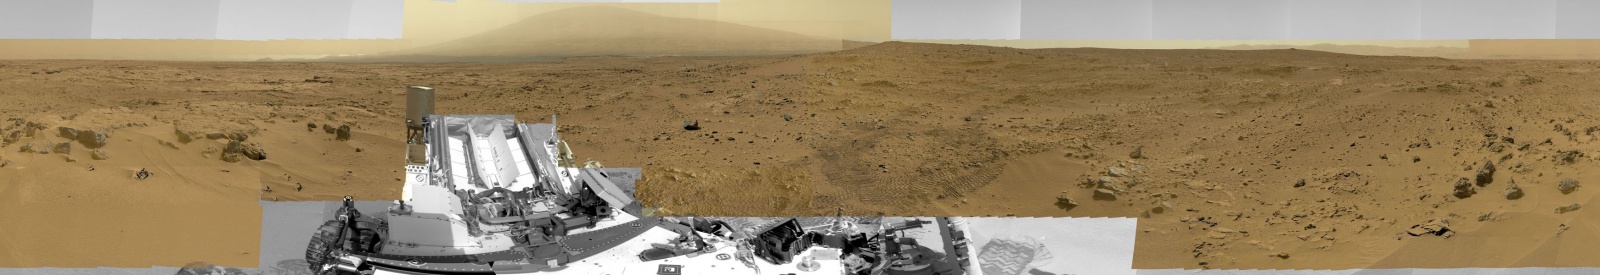 «Кьюриосити» снял панораму Марса в сверхвысоком разрешении: 1,8 млрд пикселей - 3